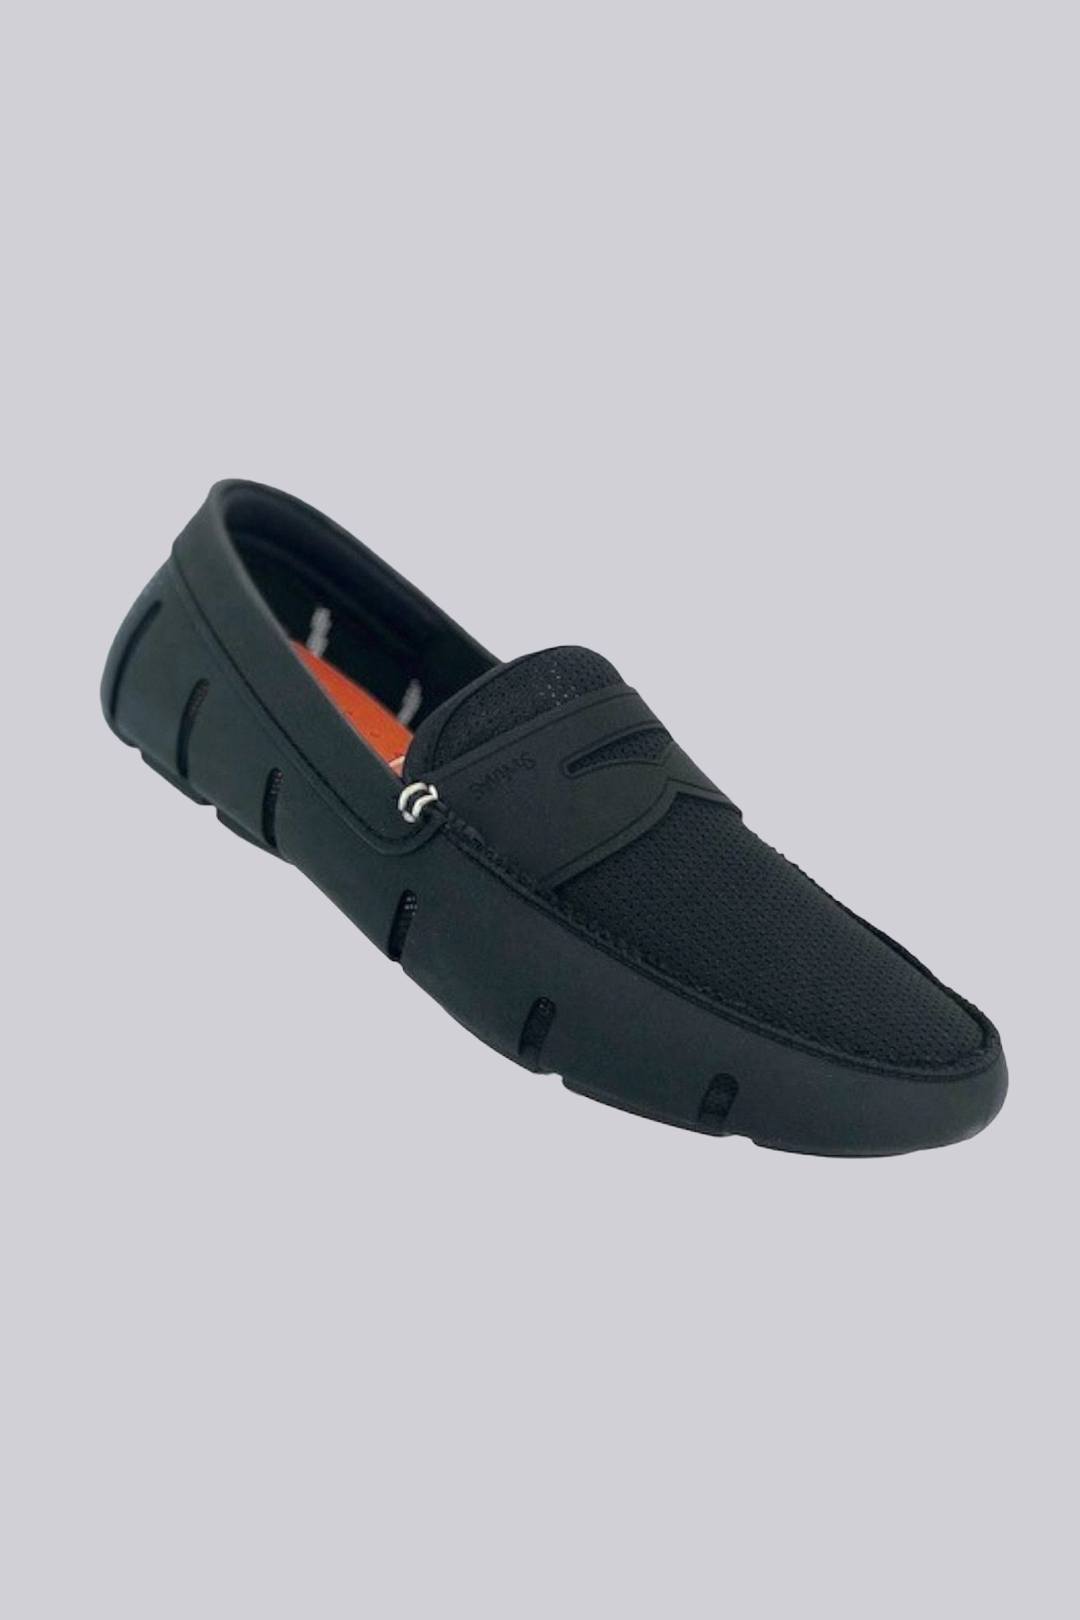 https://www.liquidyachtwear.com/wp-content/uploads/2020/11/swims-penny-loafer-black.jpg